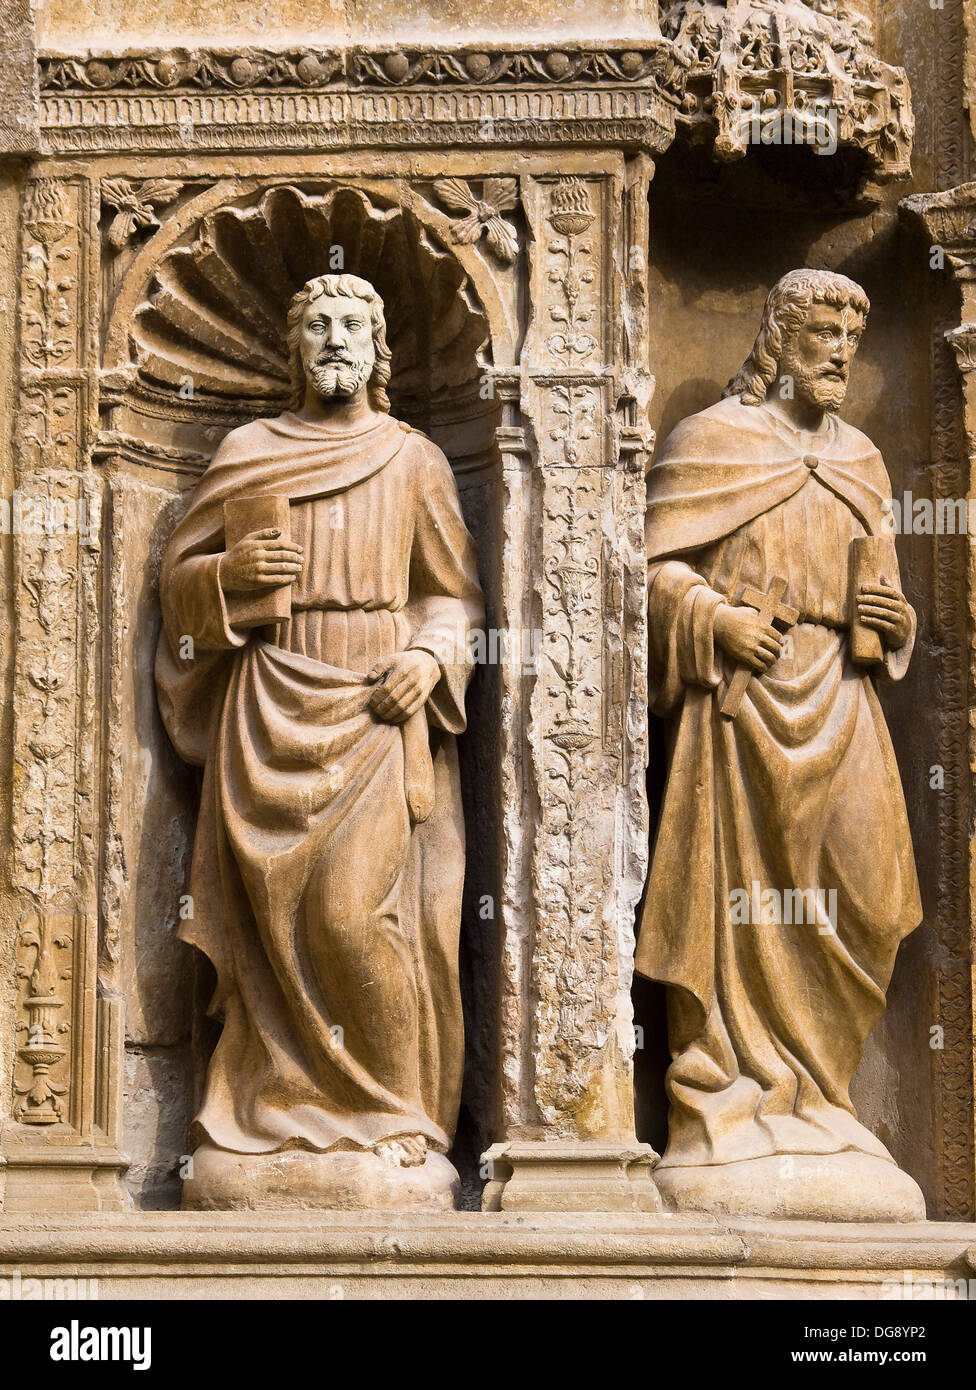 Zwei Statuen der Apostel mit ihren Attributen (ein Buch und ein Kreuz), 16. Jahrhundert Plateresque Hauptfassade von Felipe Bigarny von Stockfoto